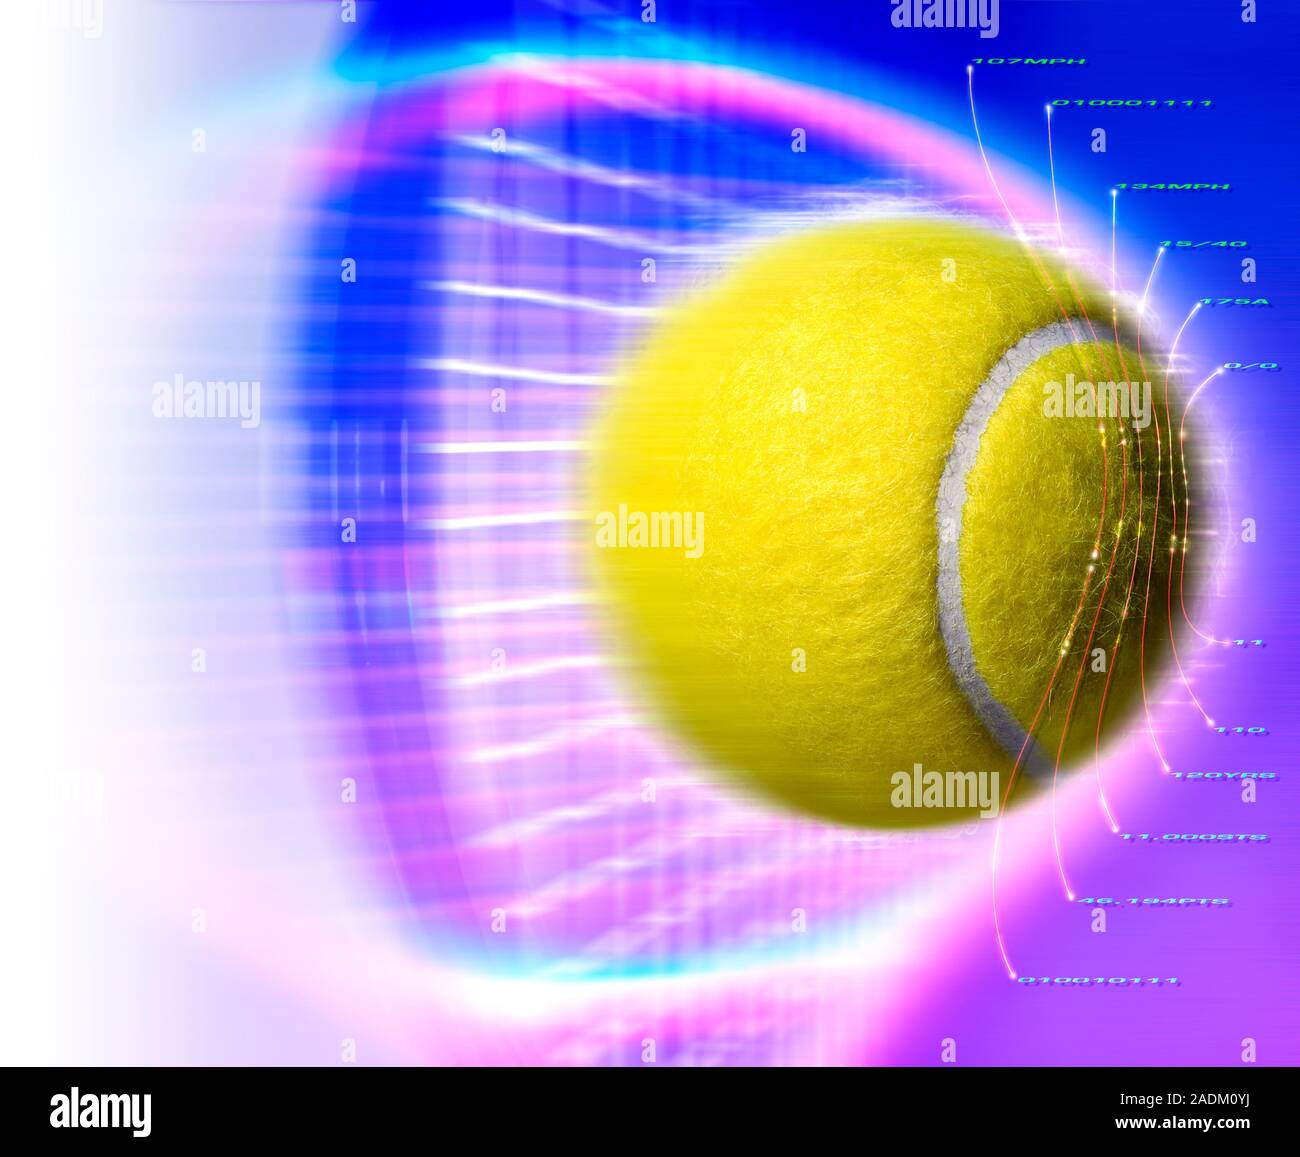 Balle de tennis. Ordinateur conceptuel artwork d'une balle de tennis et la  vitesse de trajectoire. Cela pourrait représenter des mesures de  l'aérodynamique du ballon à l'aide ma Photo Stock - Alamy